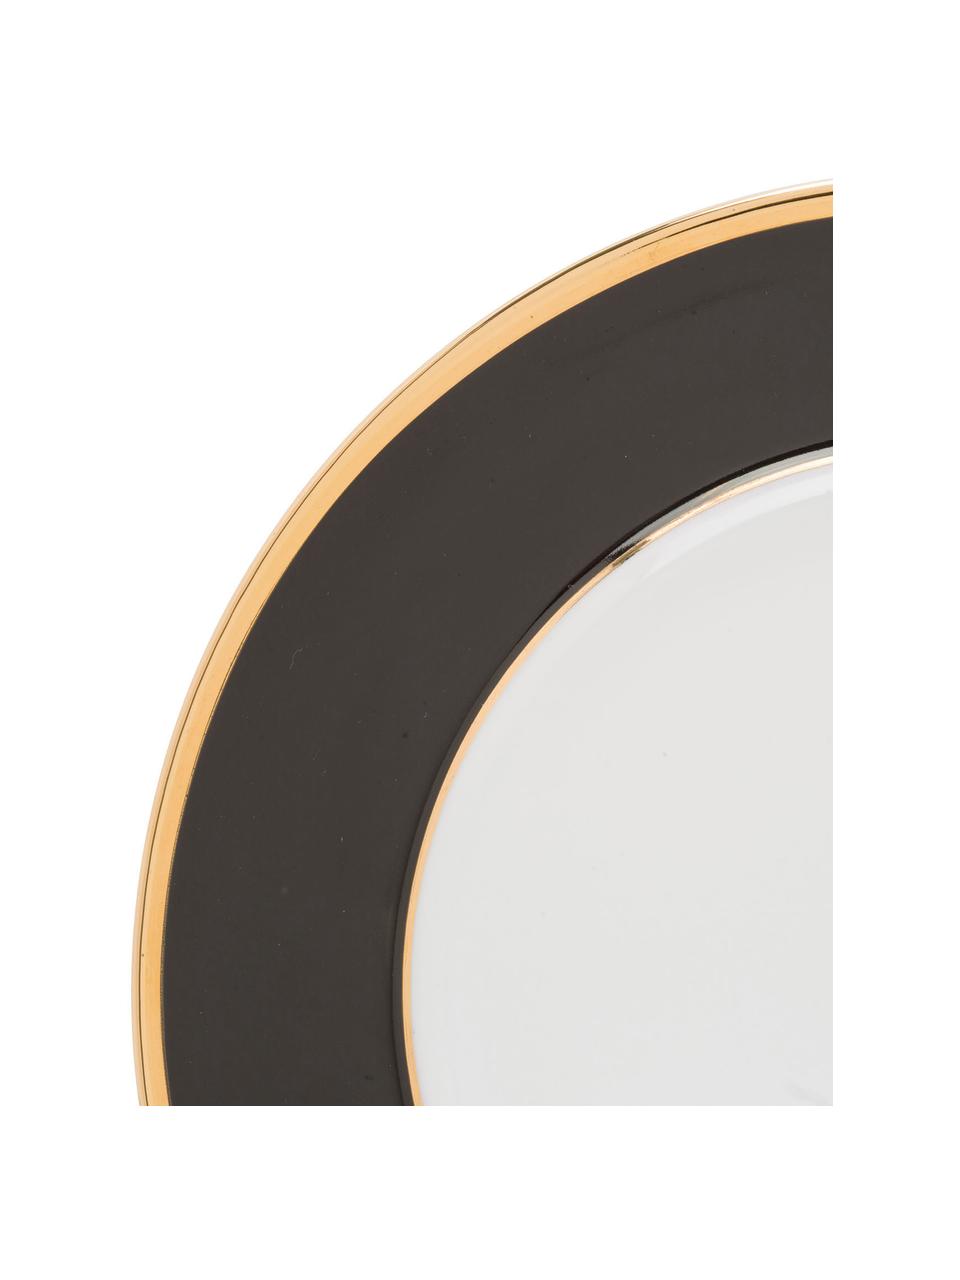 Porcelánová podložka pod talíř se zlatým okrajem Ginger, 6 ks, Porcelán, Bílá, černá, zlatá, Ø 27 cm